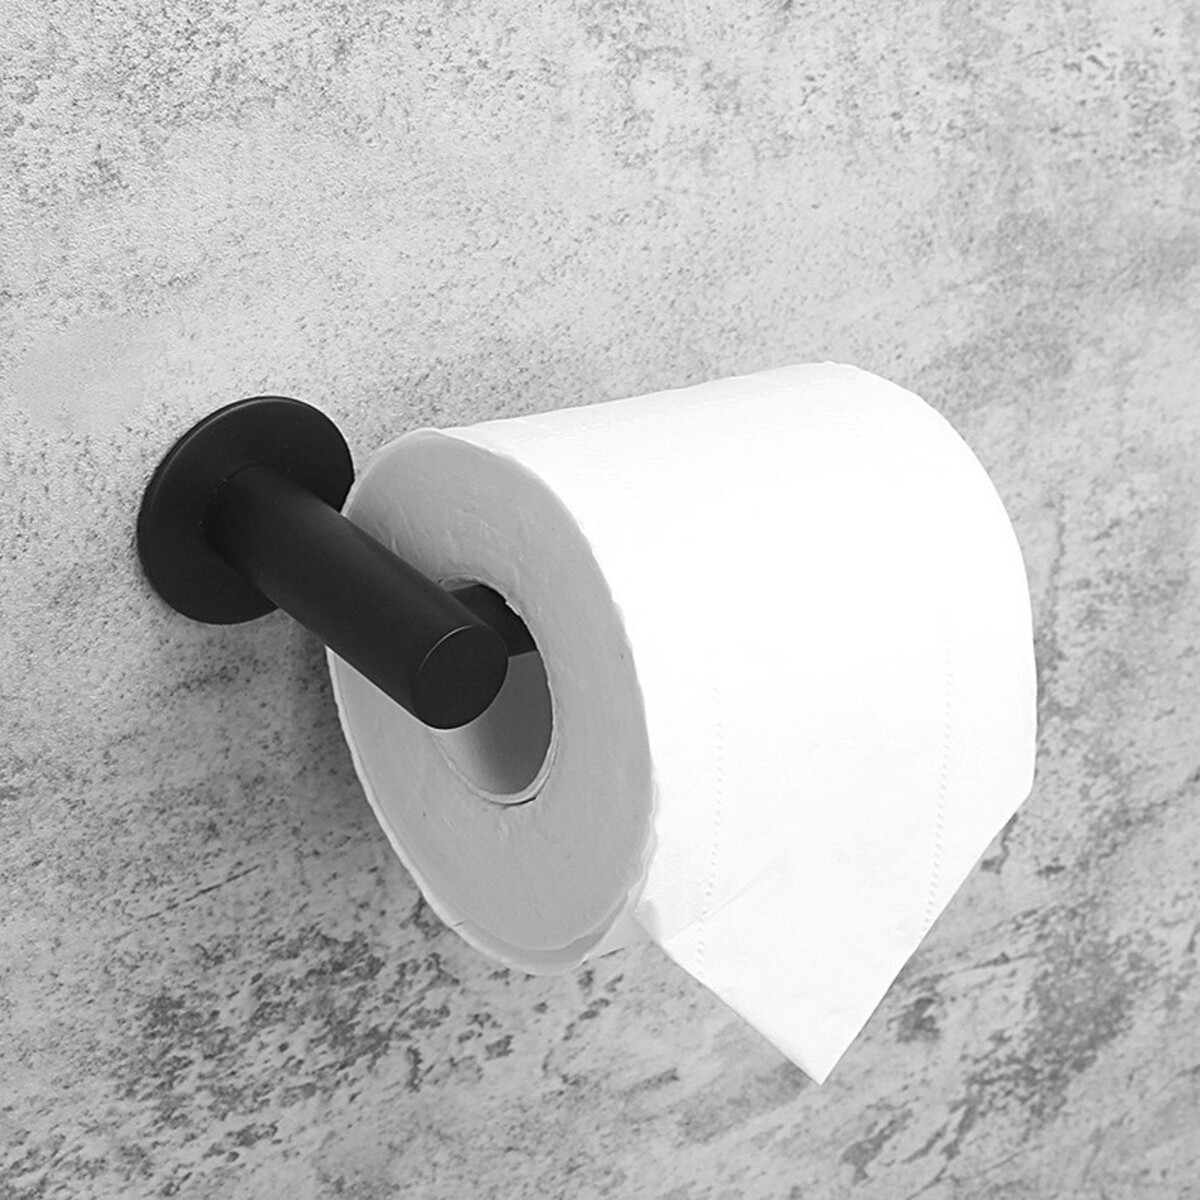 Держатель для туалетной бумаги штольц stölz, 16,2×2,5×9,5 см, нержавеющая сталь, цвет черный держатель для туалетной бумаги штольц stölz 16 2×2 5×9 5 см нержавеющая сталь